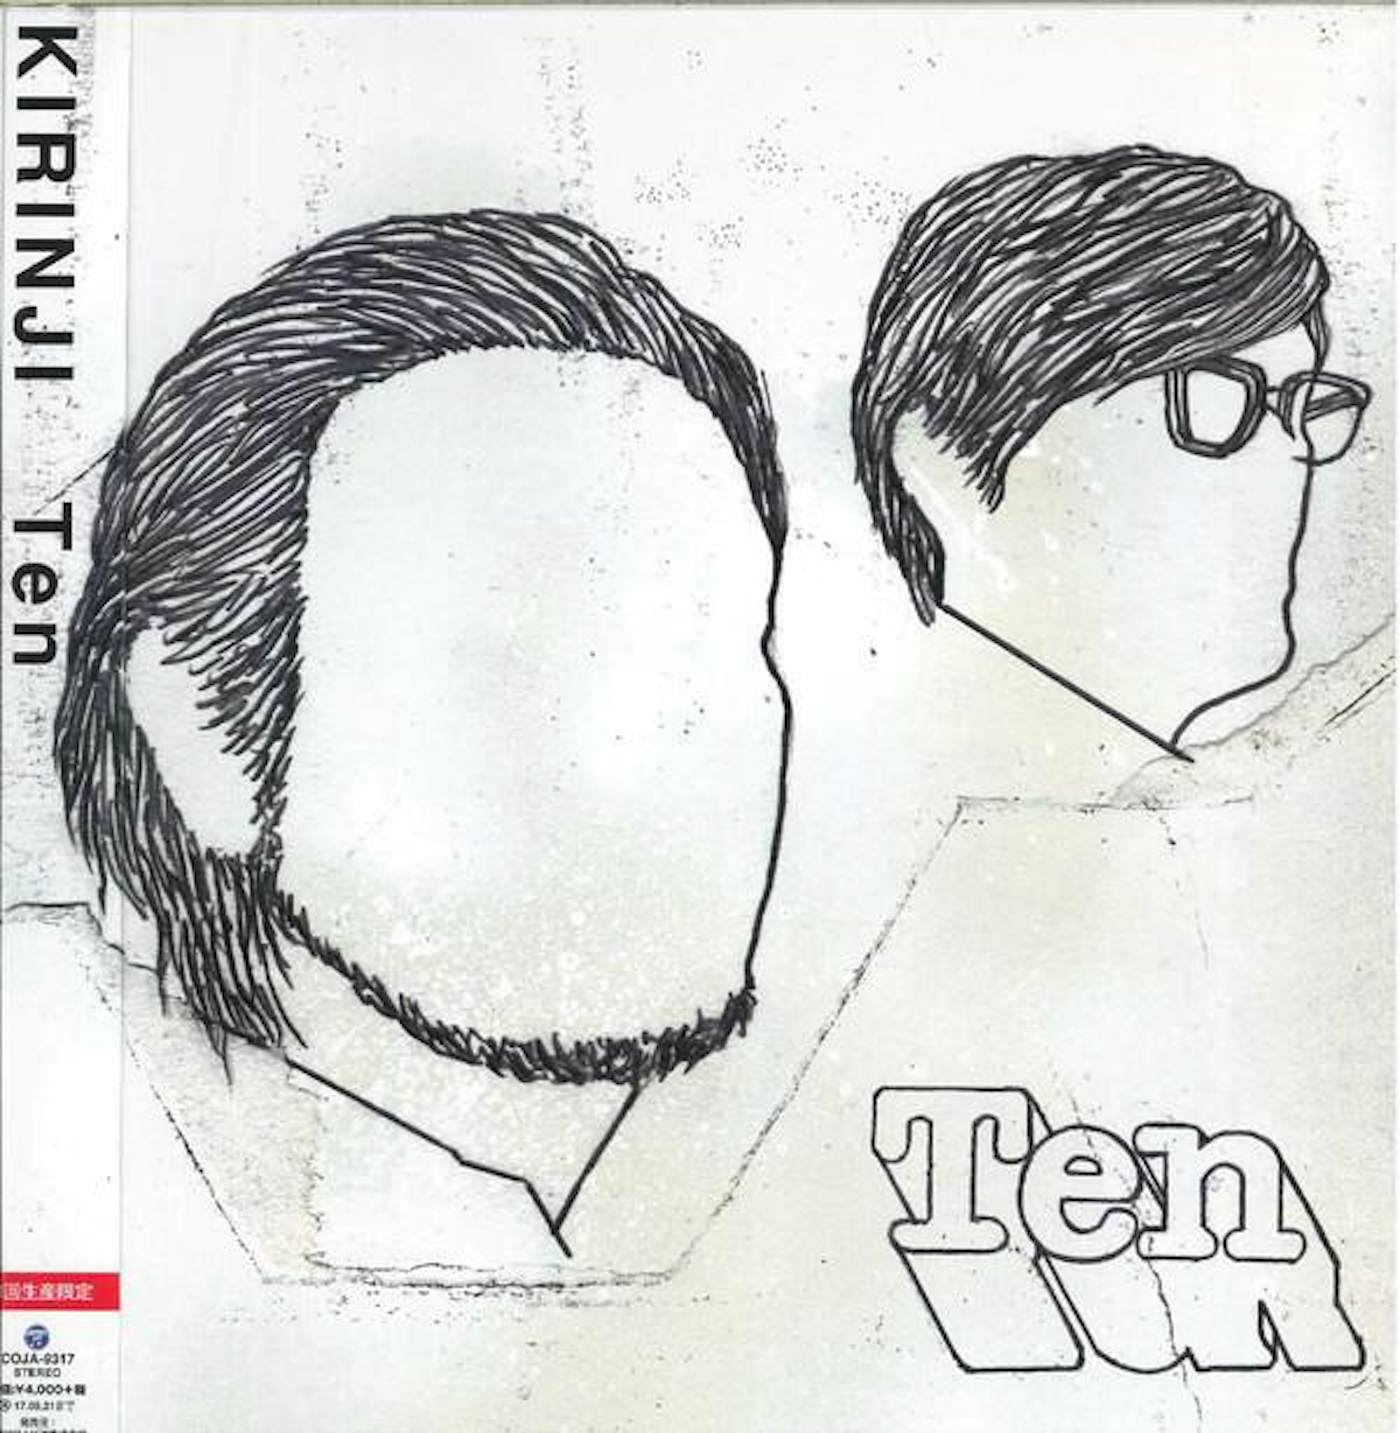 KIRINJI Ten Vinyl Record